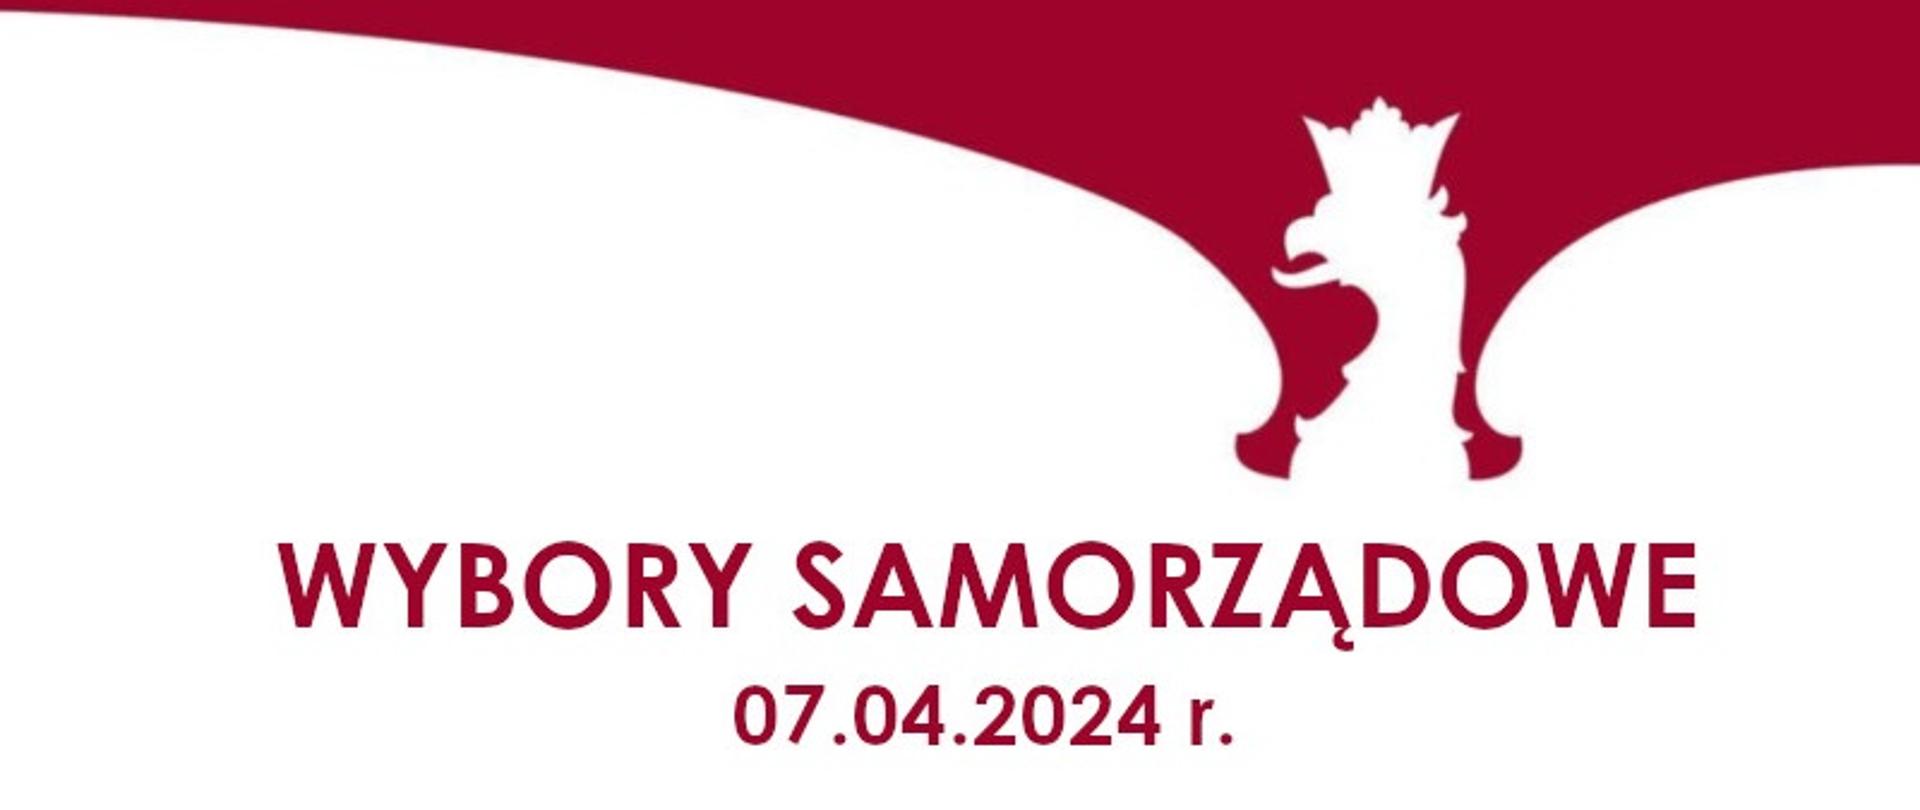 Obrys postaci orła w koronie na czerwonym tle. Pod nim napis Wybory samorządowe 7 kwietnia 2024 roku